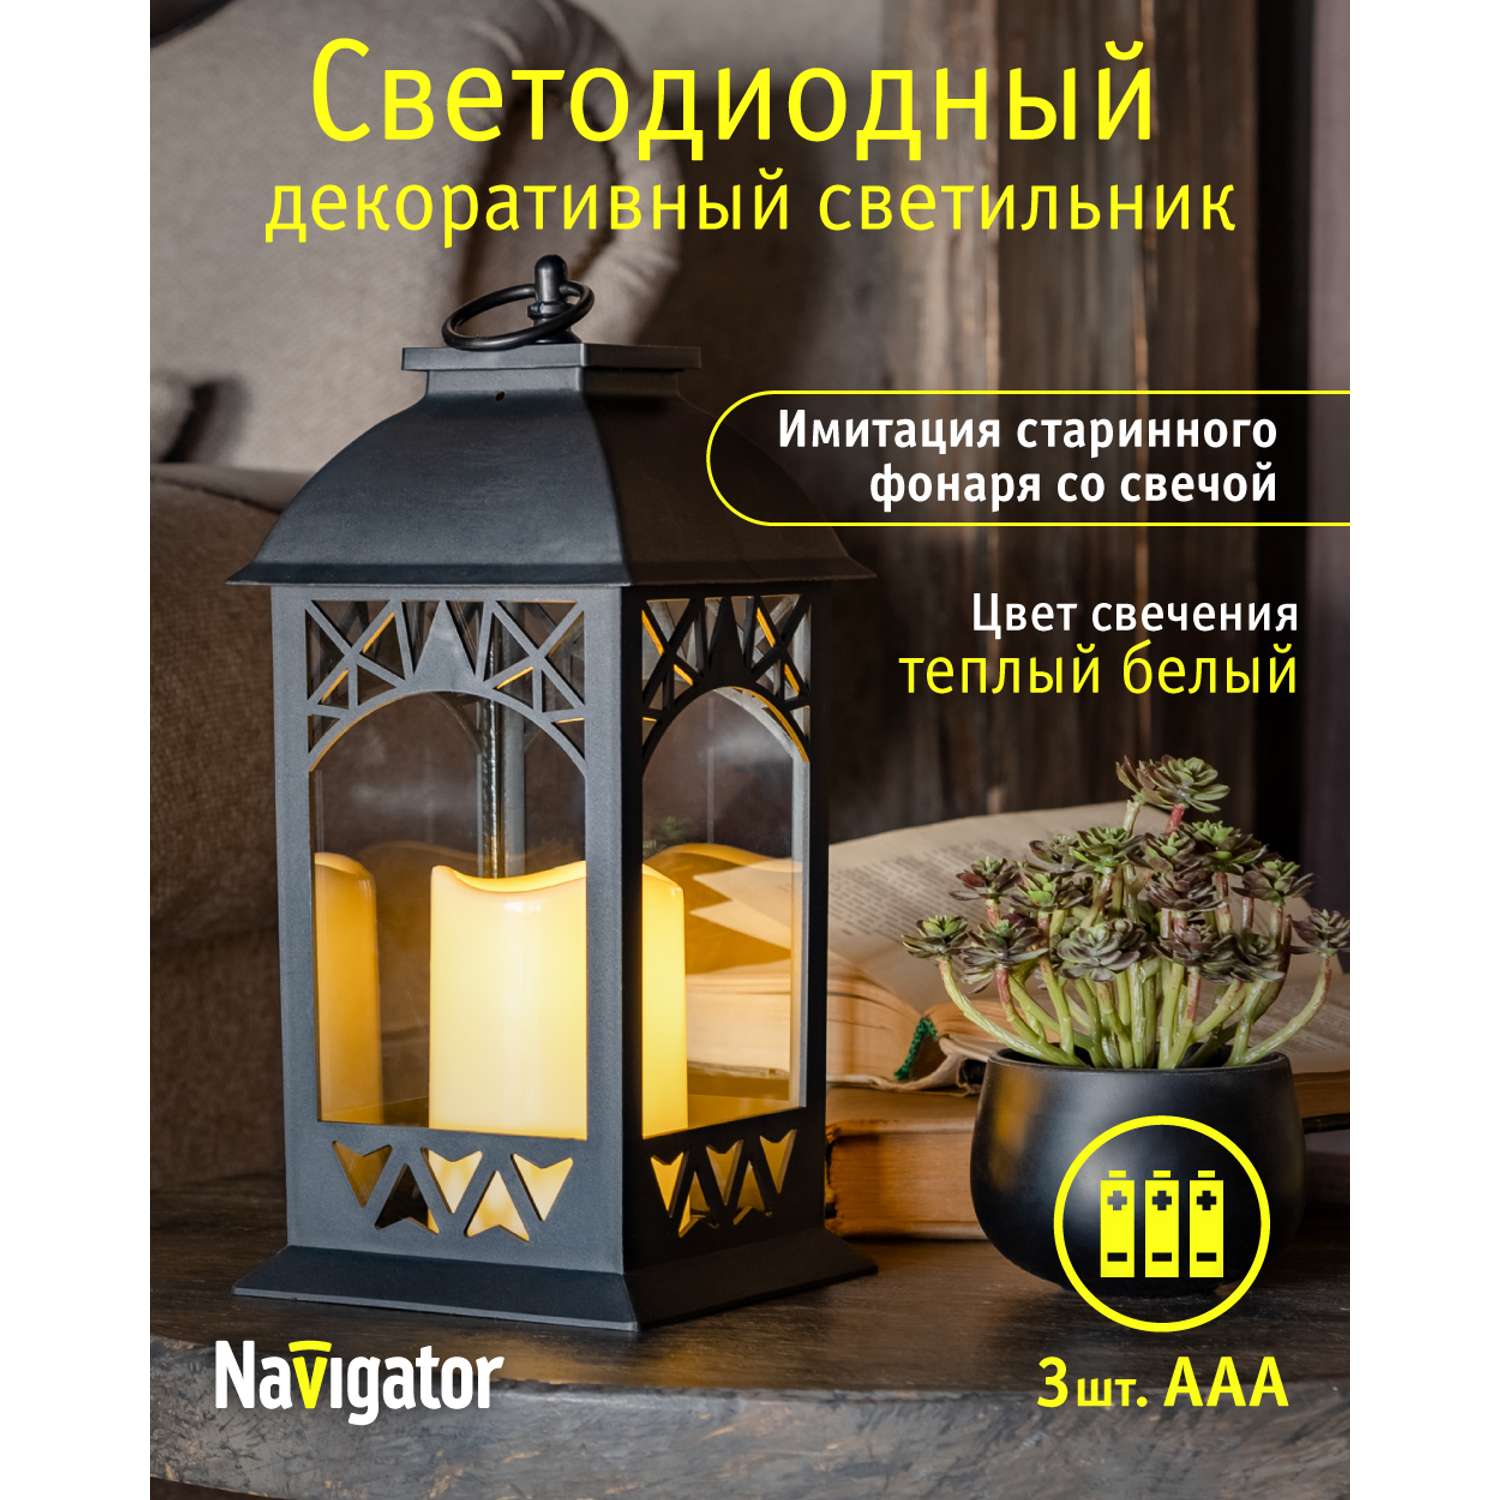 Декоративный светильник navigator светодиодный ночник для детской комнаты ажурный - фото 2